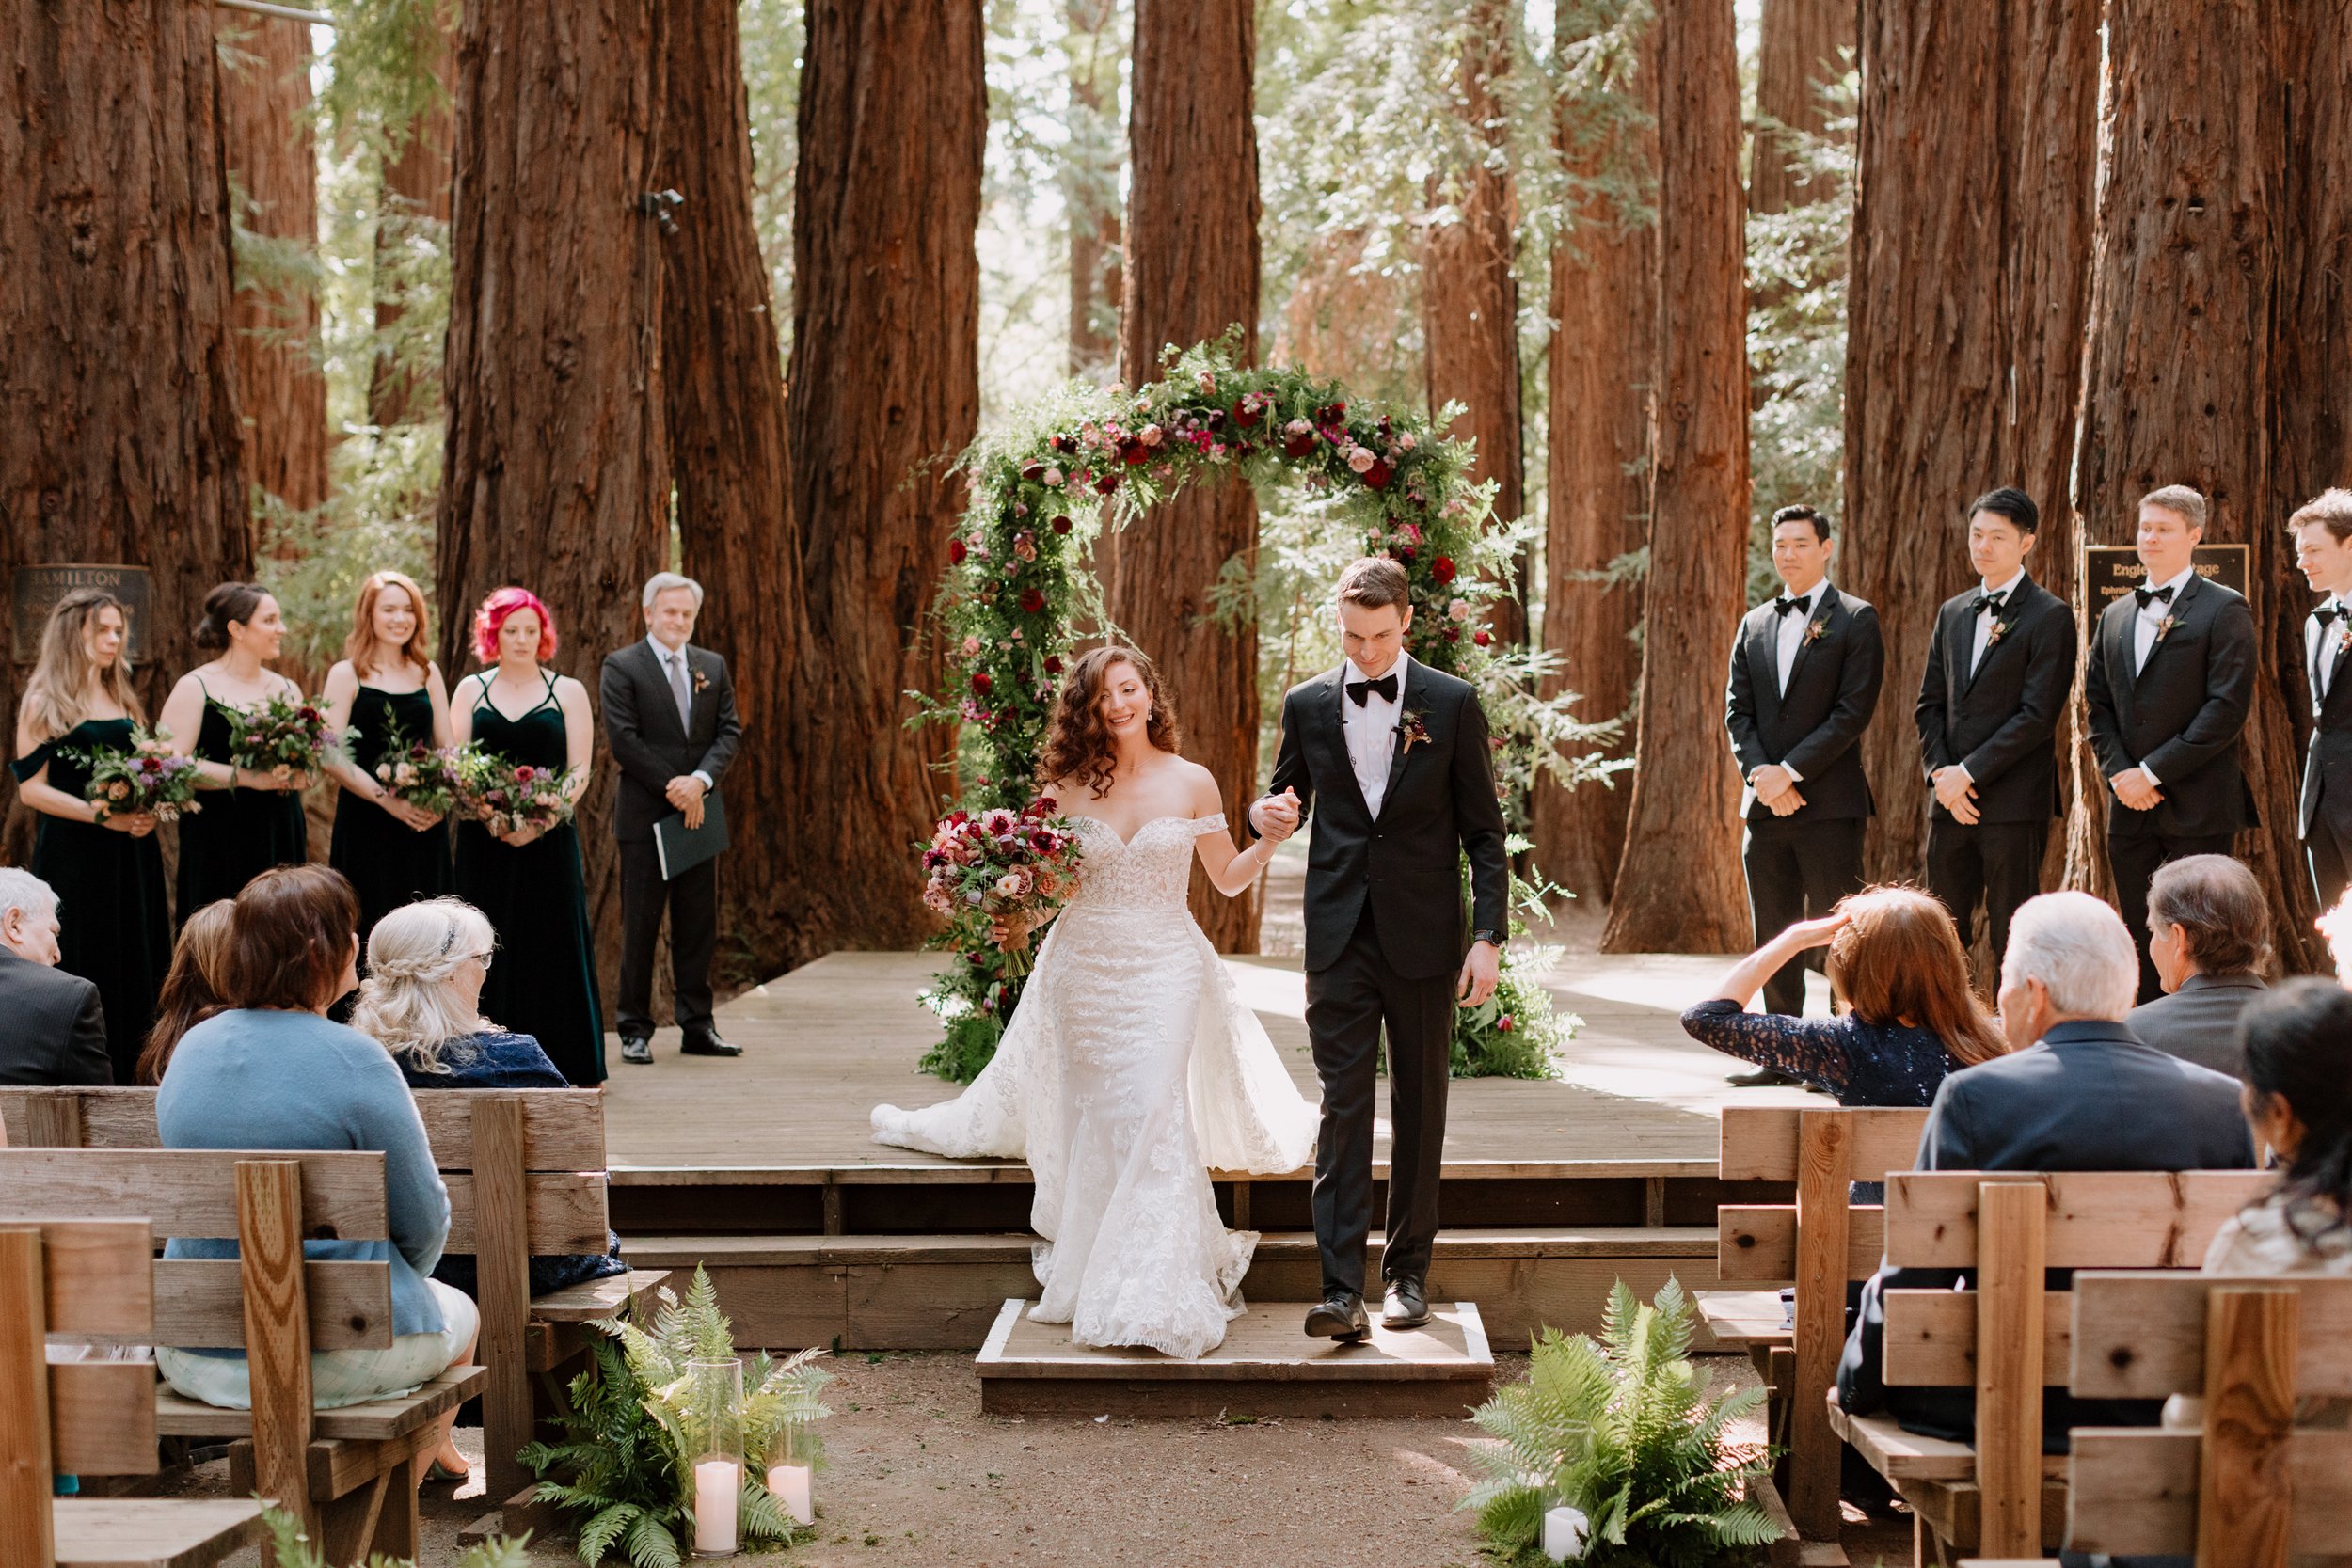 Bobby & Natasha's Family Farm Wedding | Woodside, CA